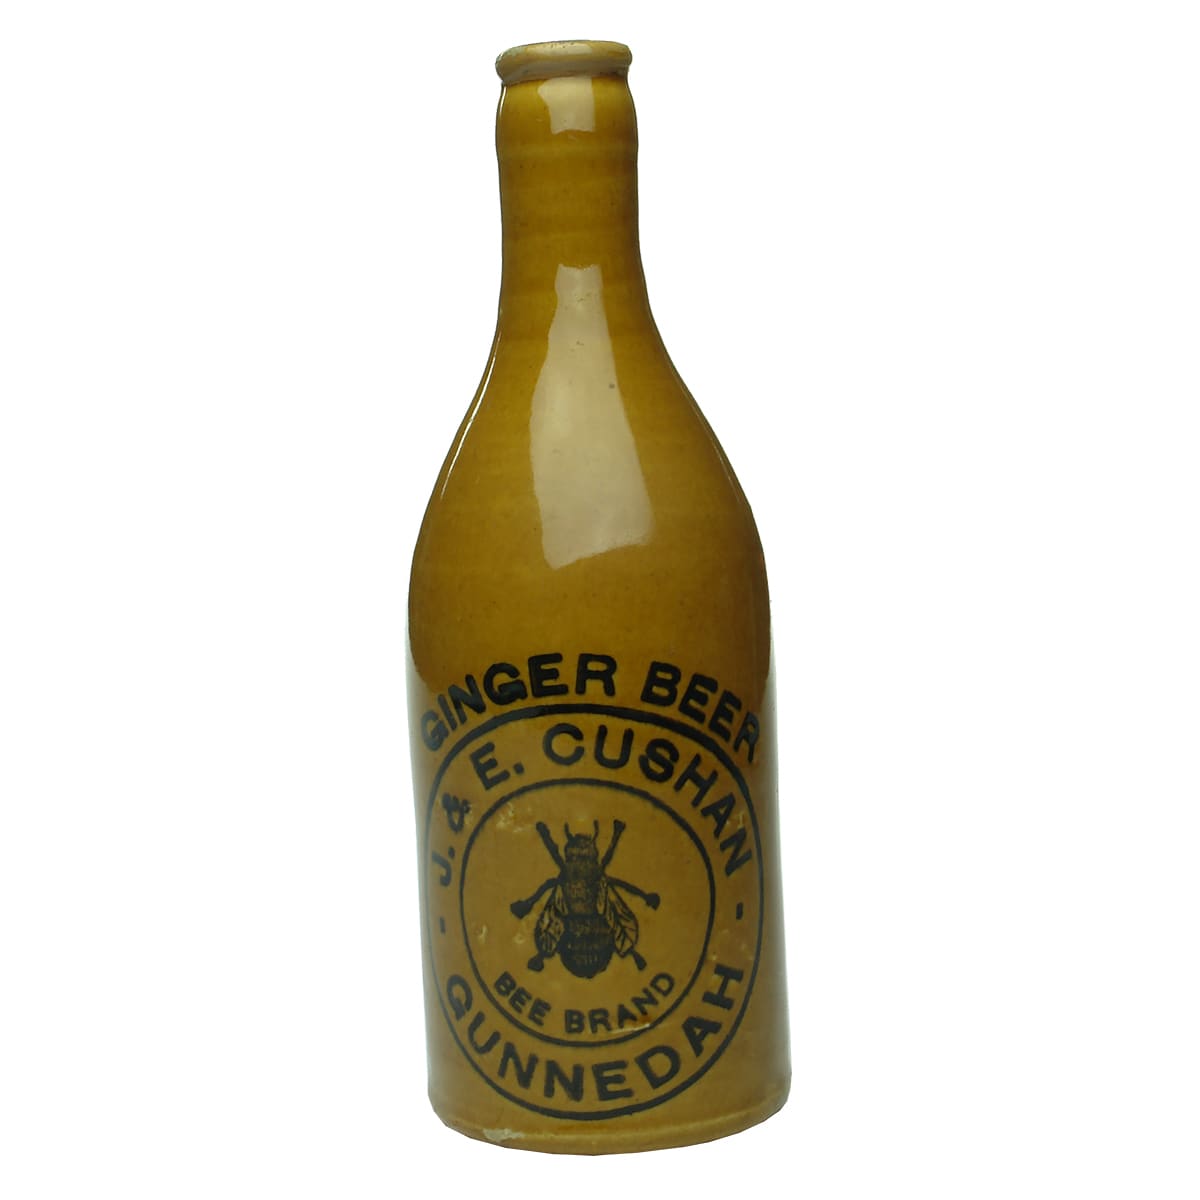 Ginger Beer. Cushan, Gunnedah. Crown Seal. All Tan. (New South Wales)